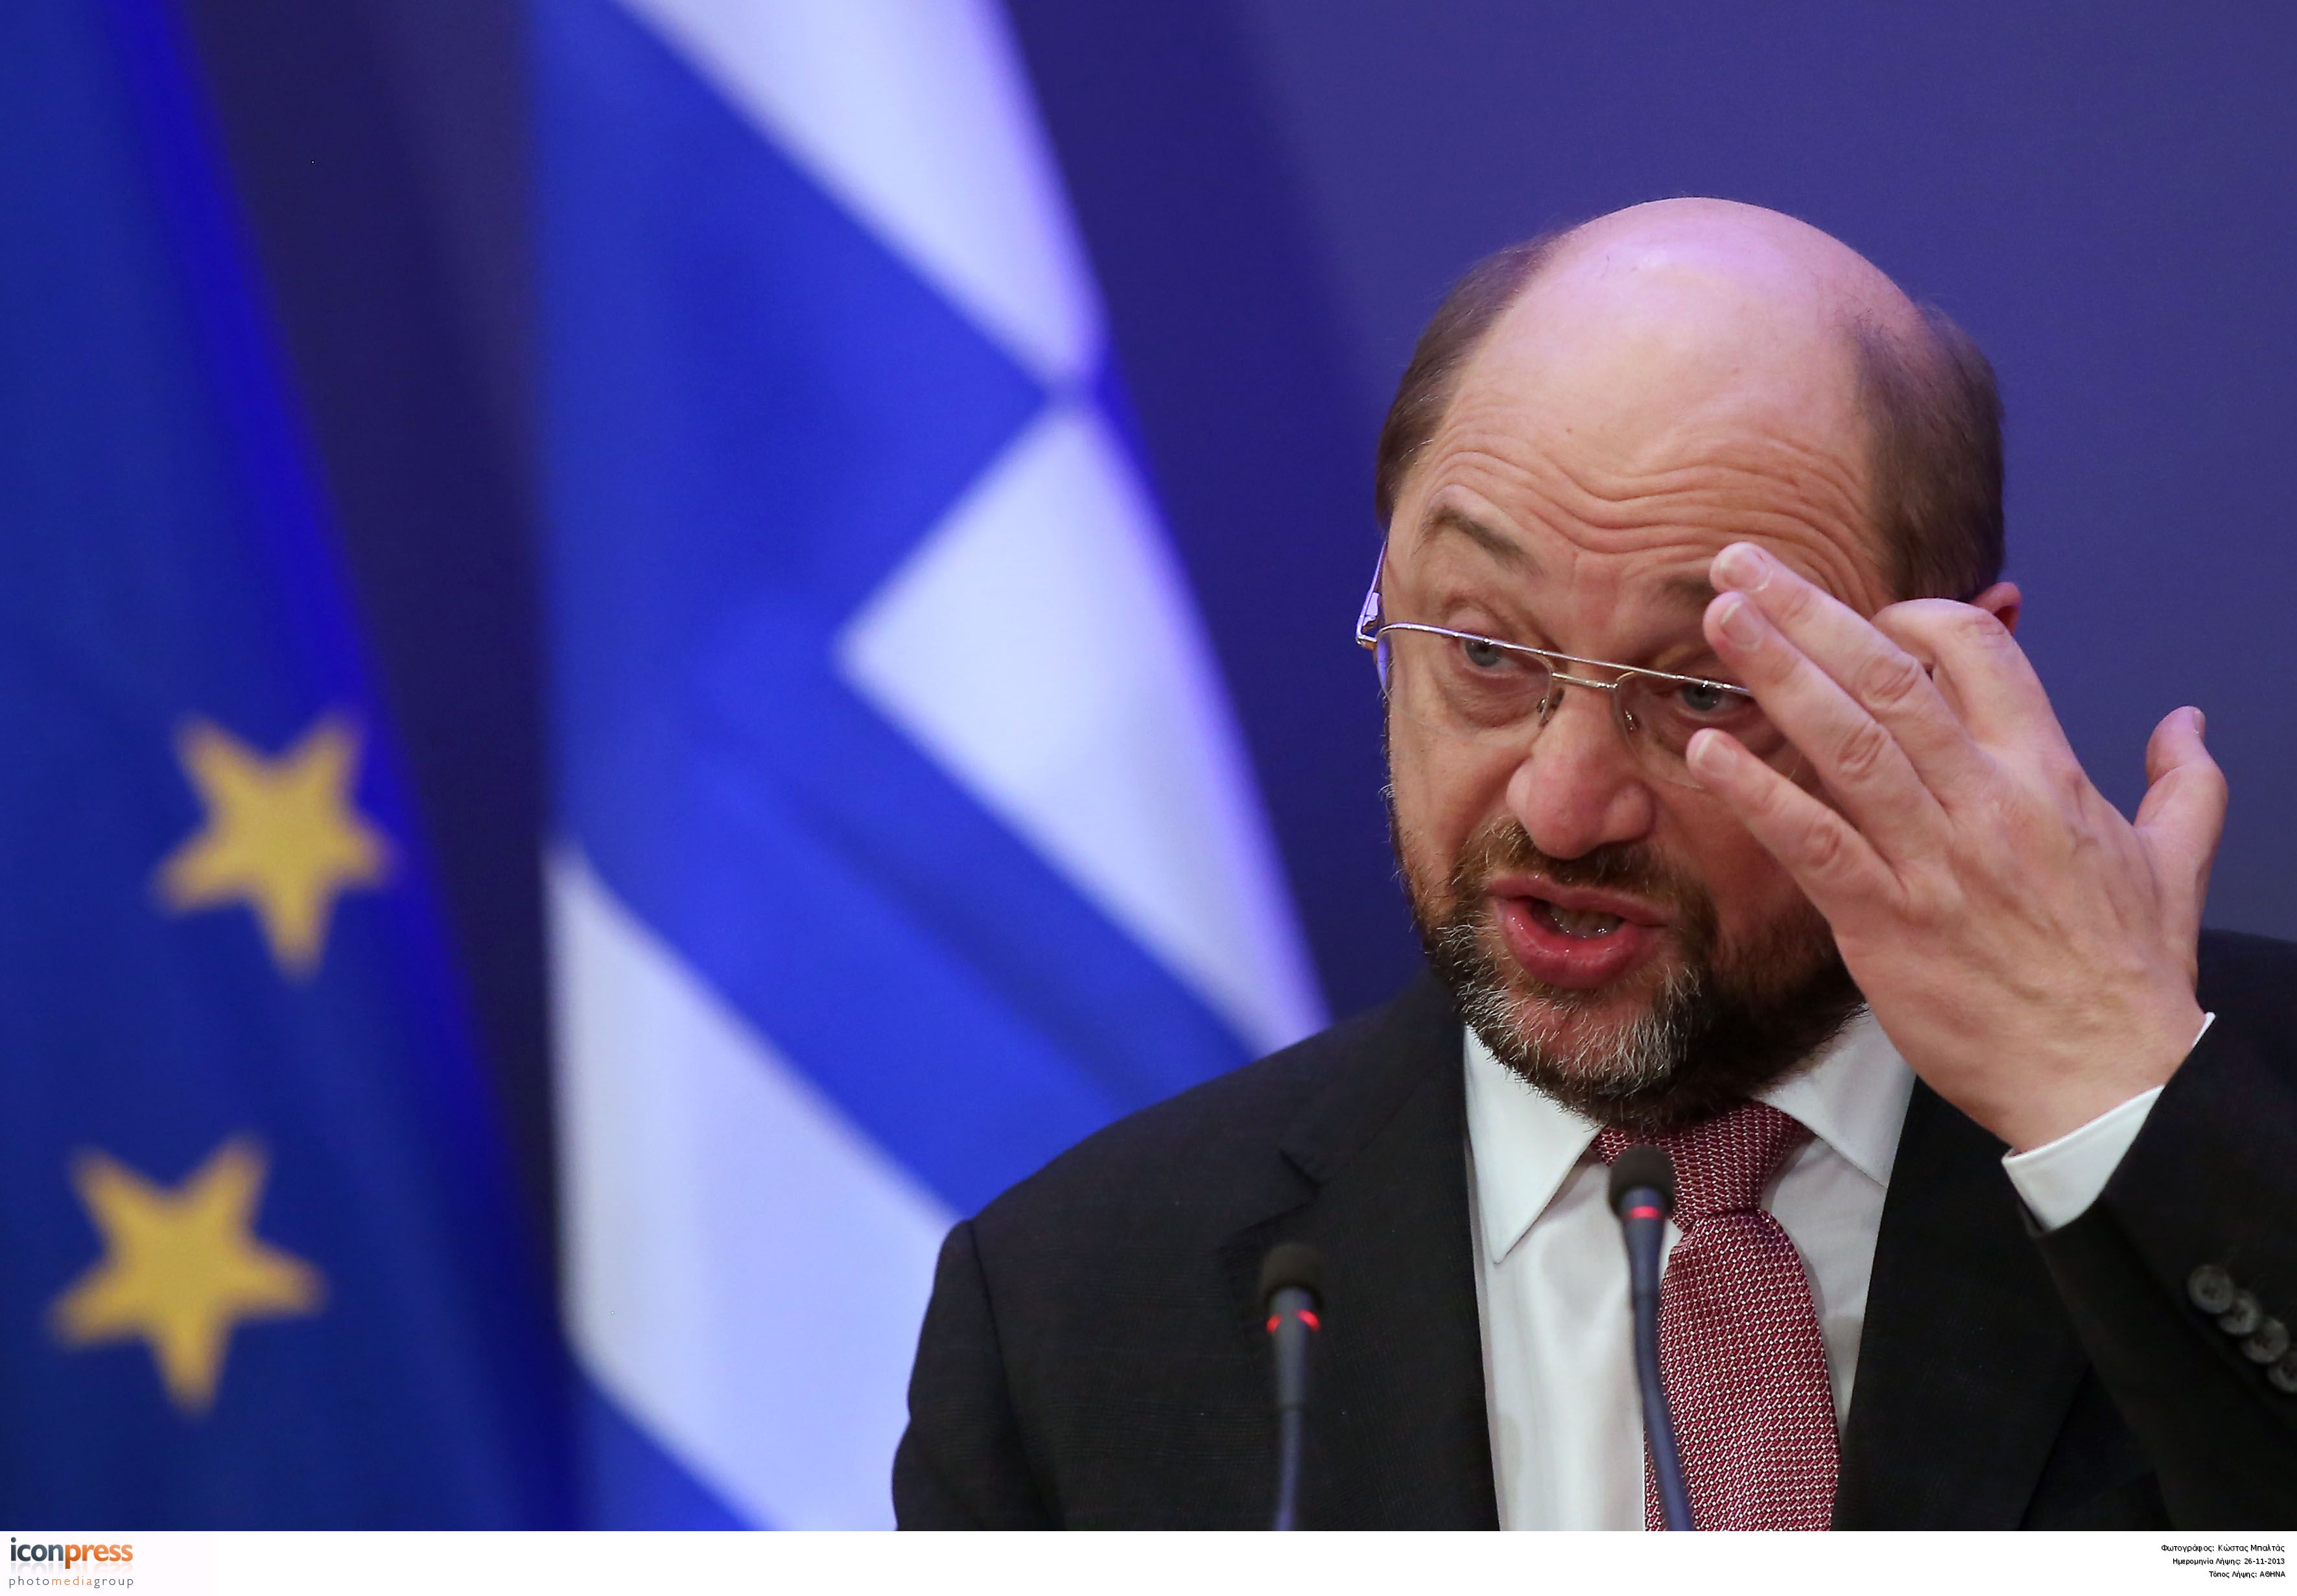 Σουλτς: Η ελληνική κυβέρνηση επέλεξε το μνημόνιο δεν το επέβαλαν οι Ευρωπαίοι